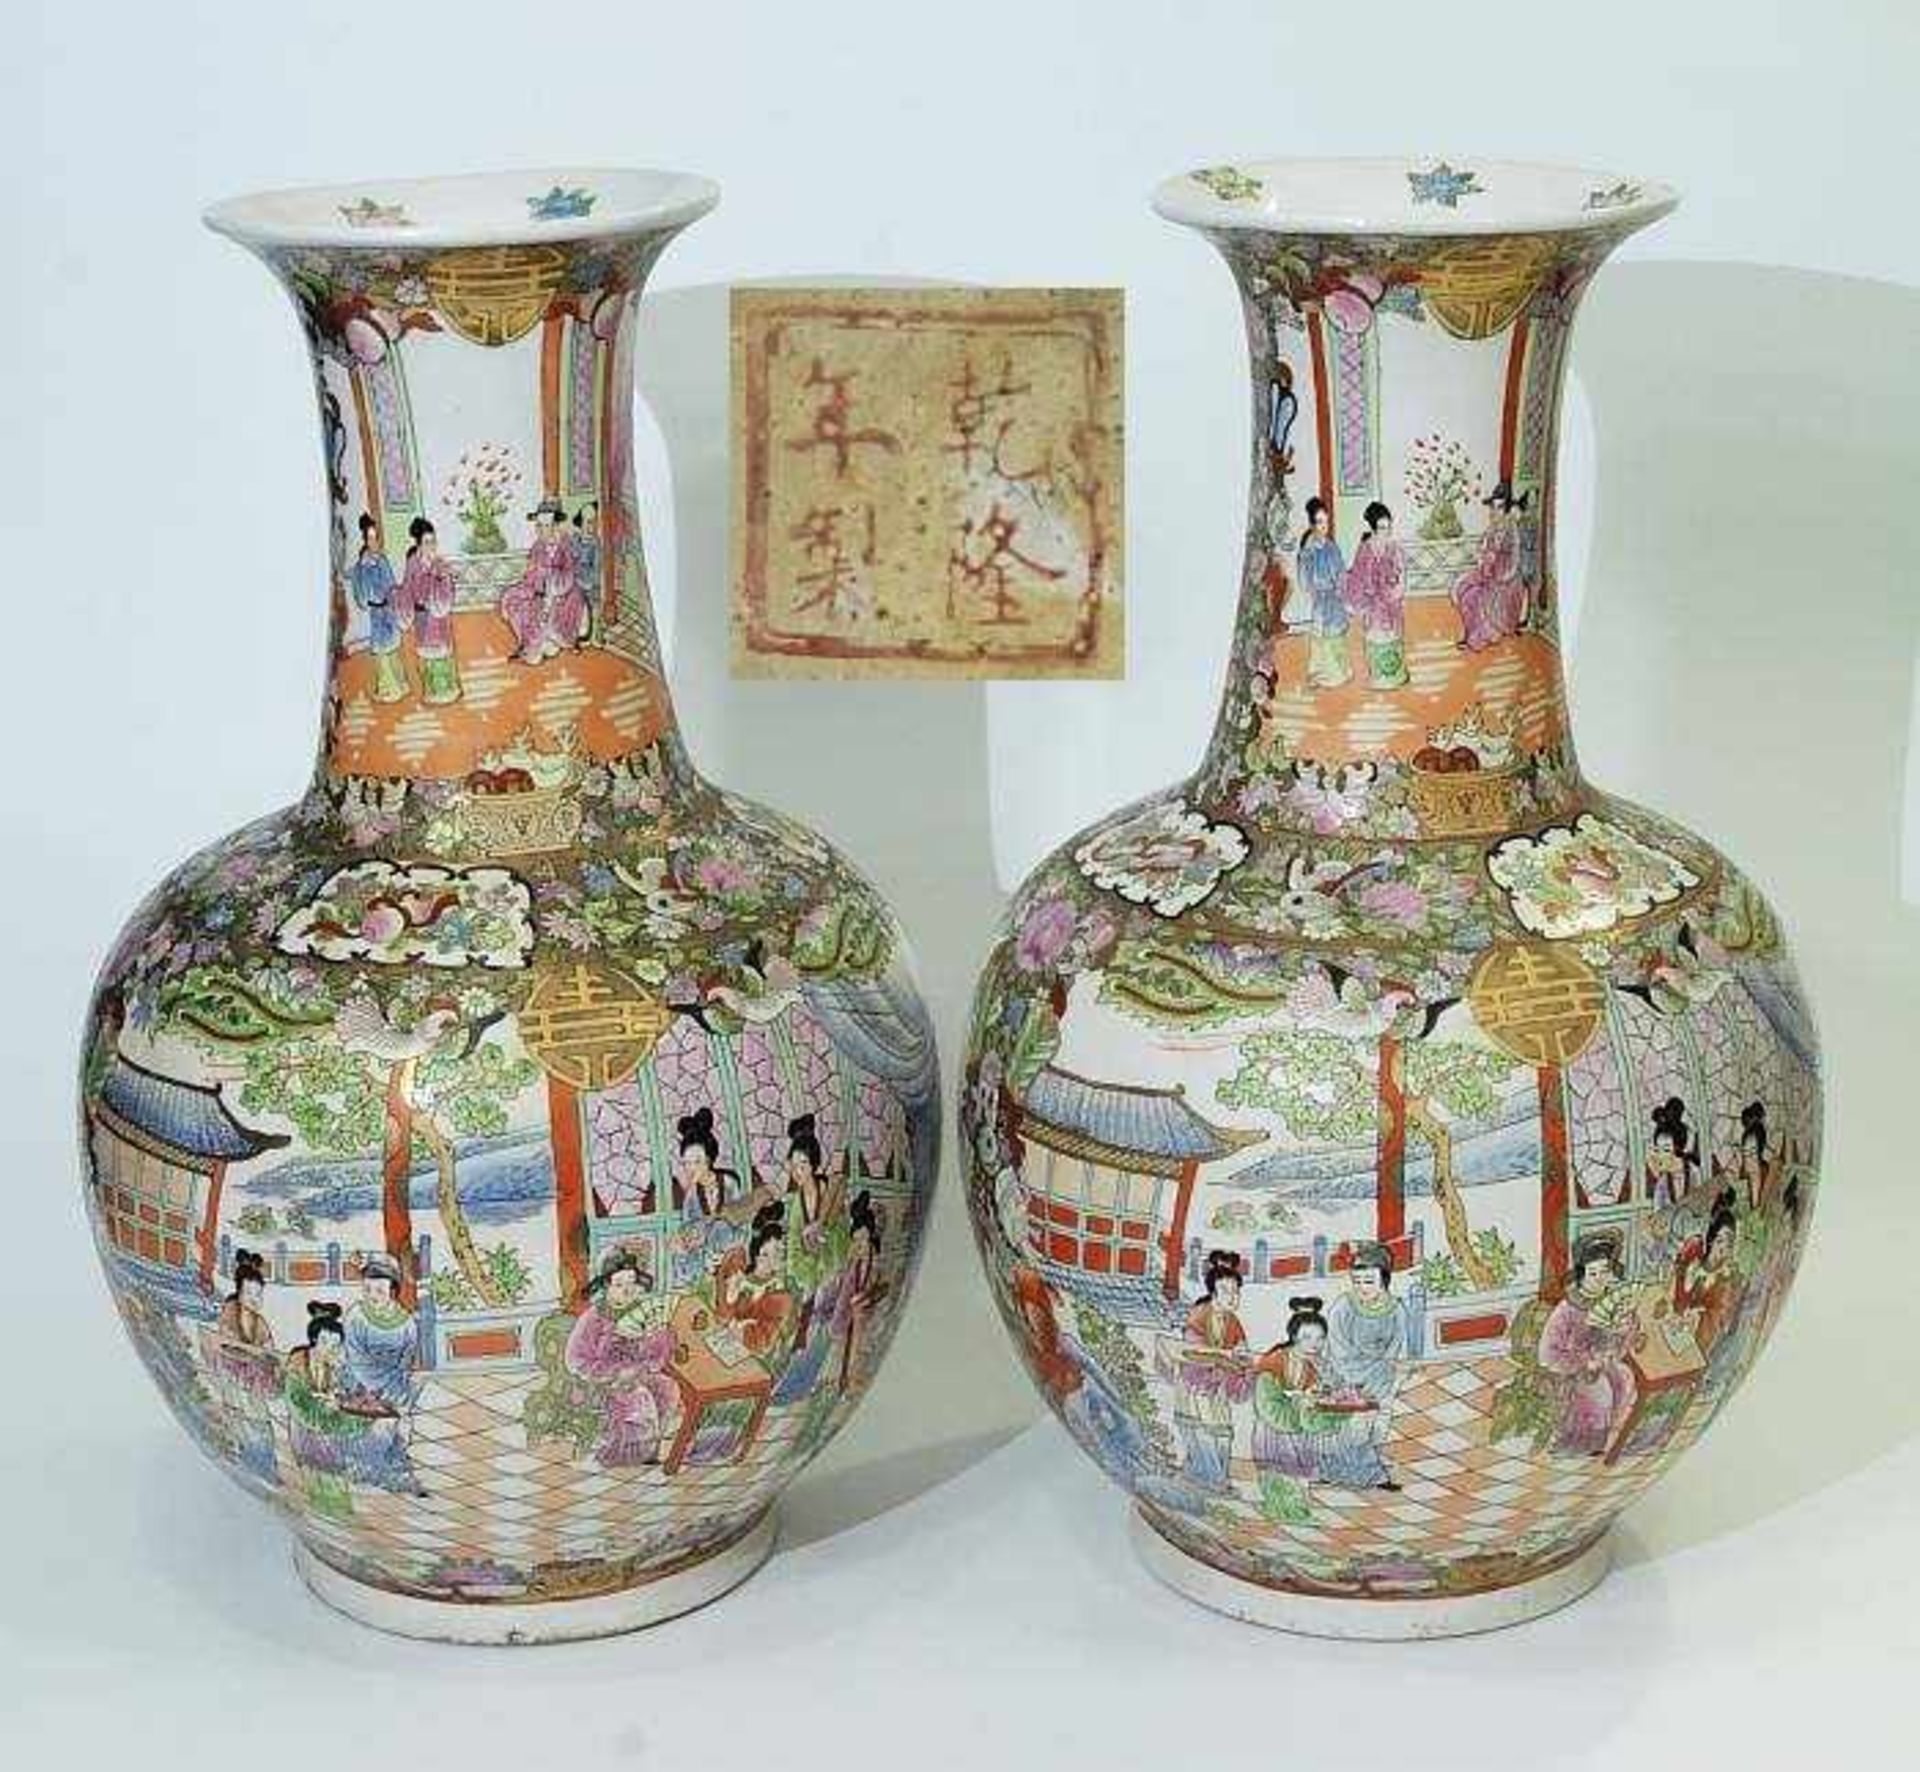 Vasenpaar. Vasenpaar. CHINA 20. Jahrhundert. Balusterform mit aufsteigendem Vasenhals. Umlaufende